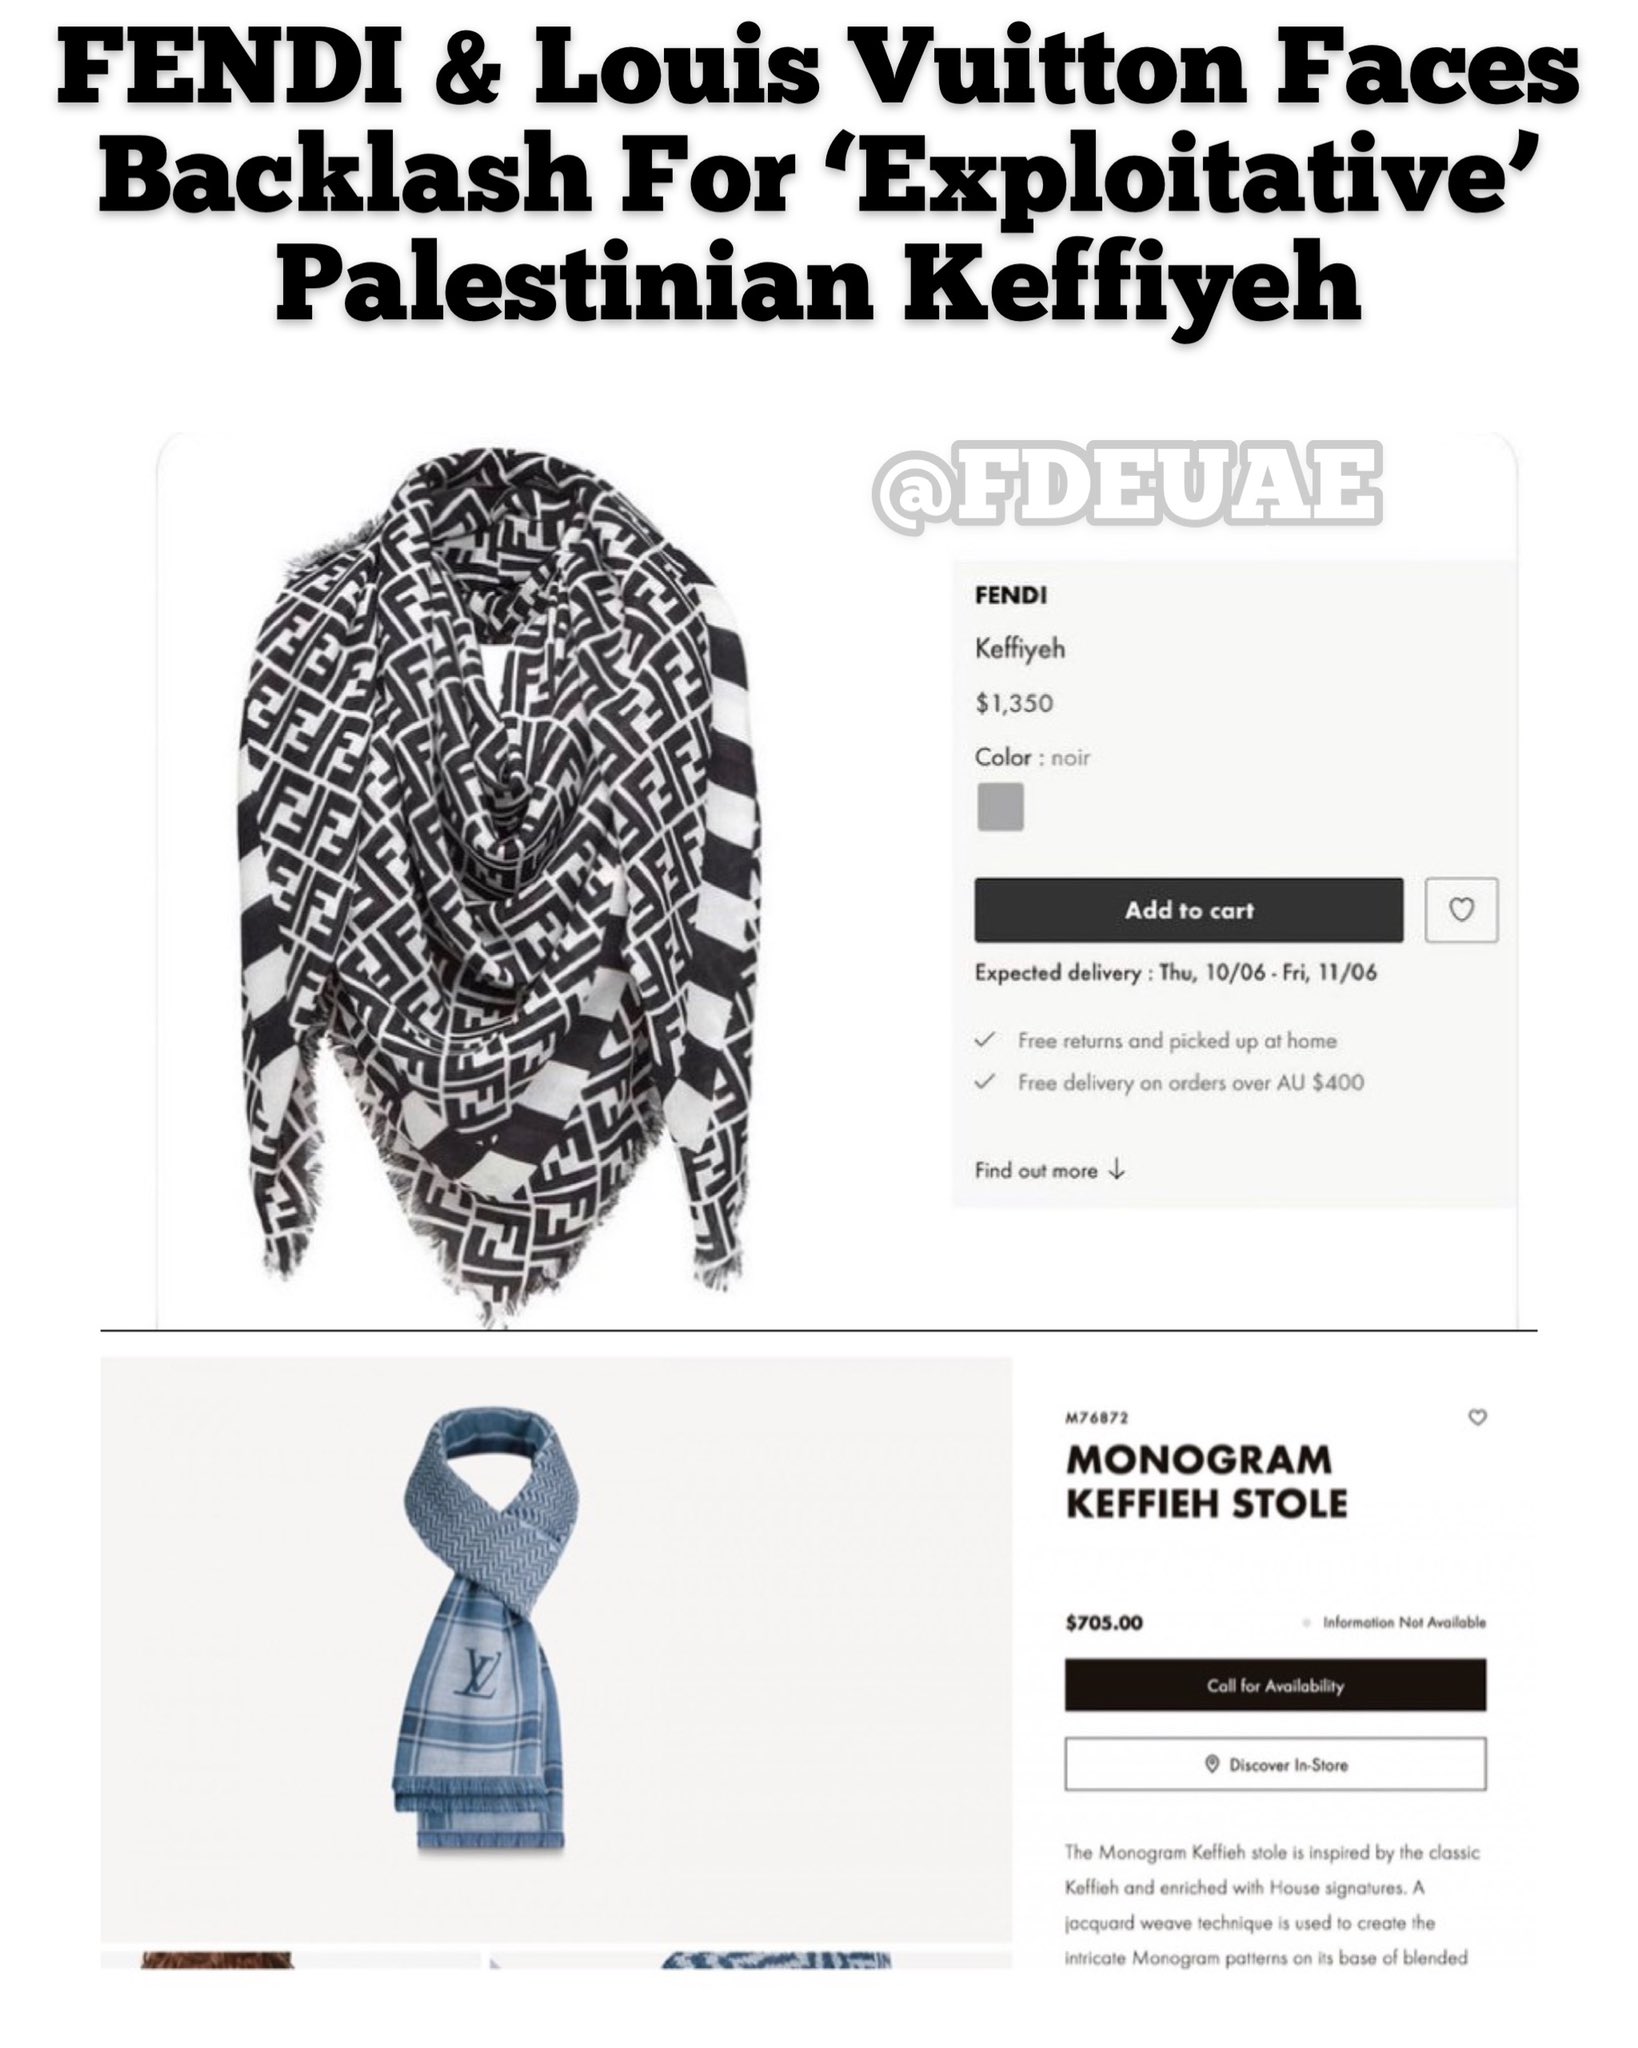 Louis Vuitton faces backlash for 'exploitative' Palestinian